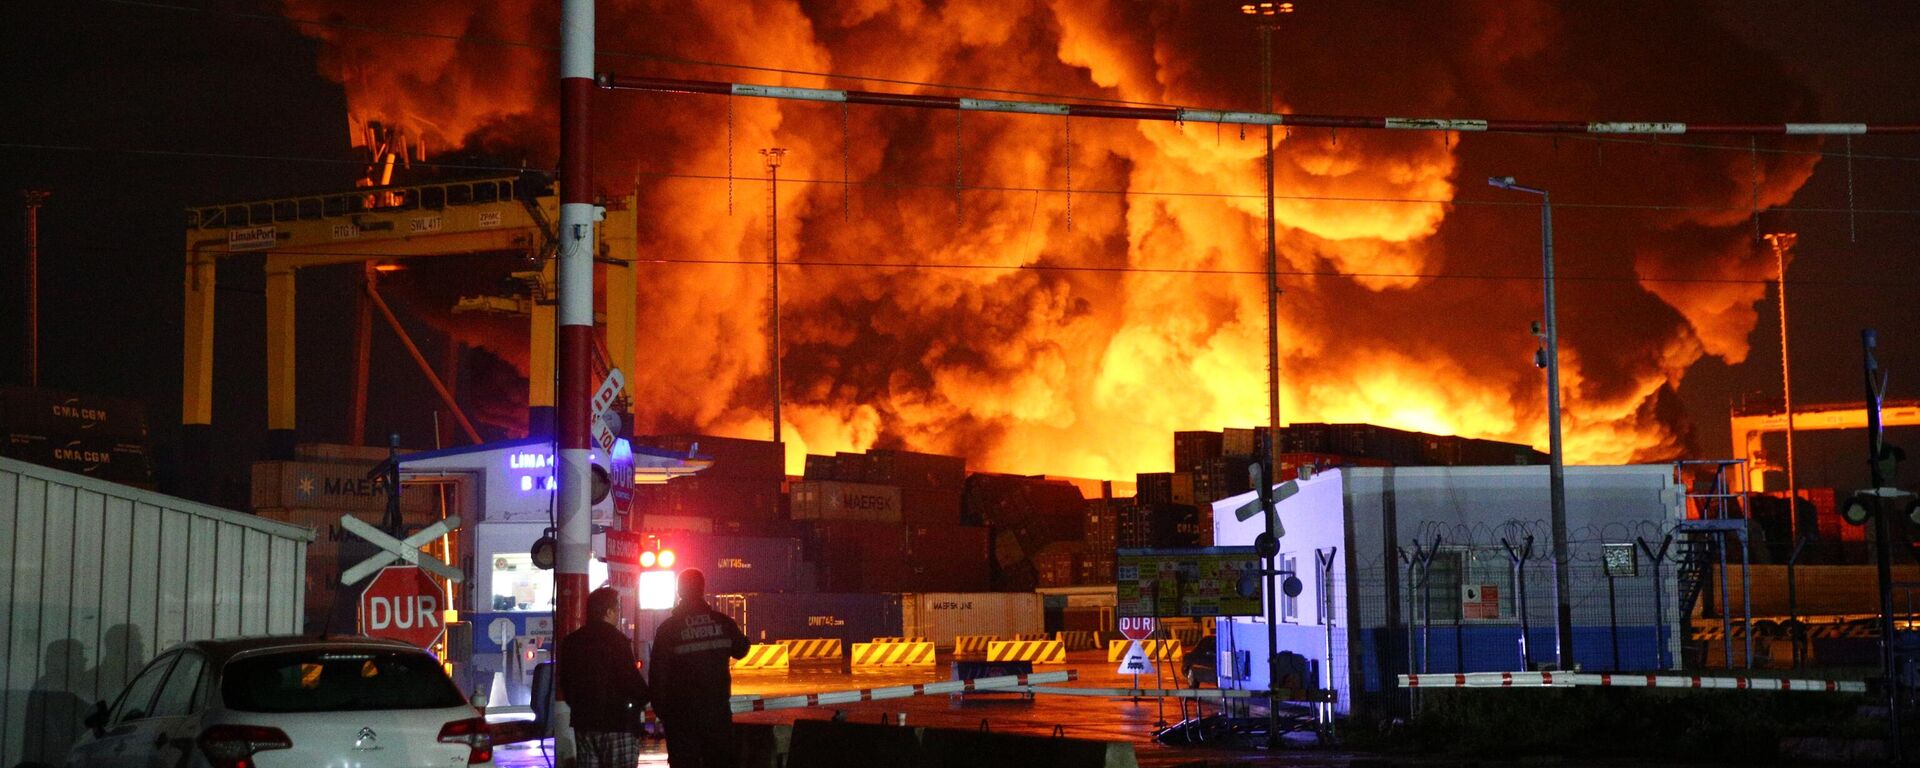 İskenderun Limanı'nda dün depremin ardından devrilen konteynerlerde çıkan yangın sürüyor. - Sputnik Türkiye, 1920, 08.02.2023